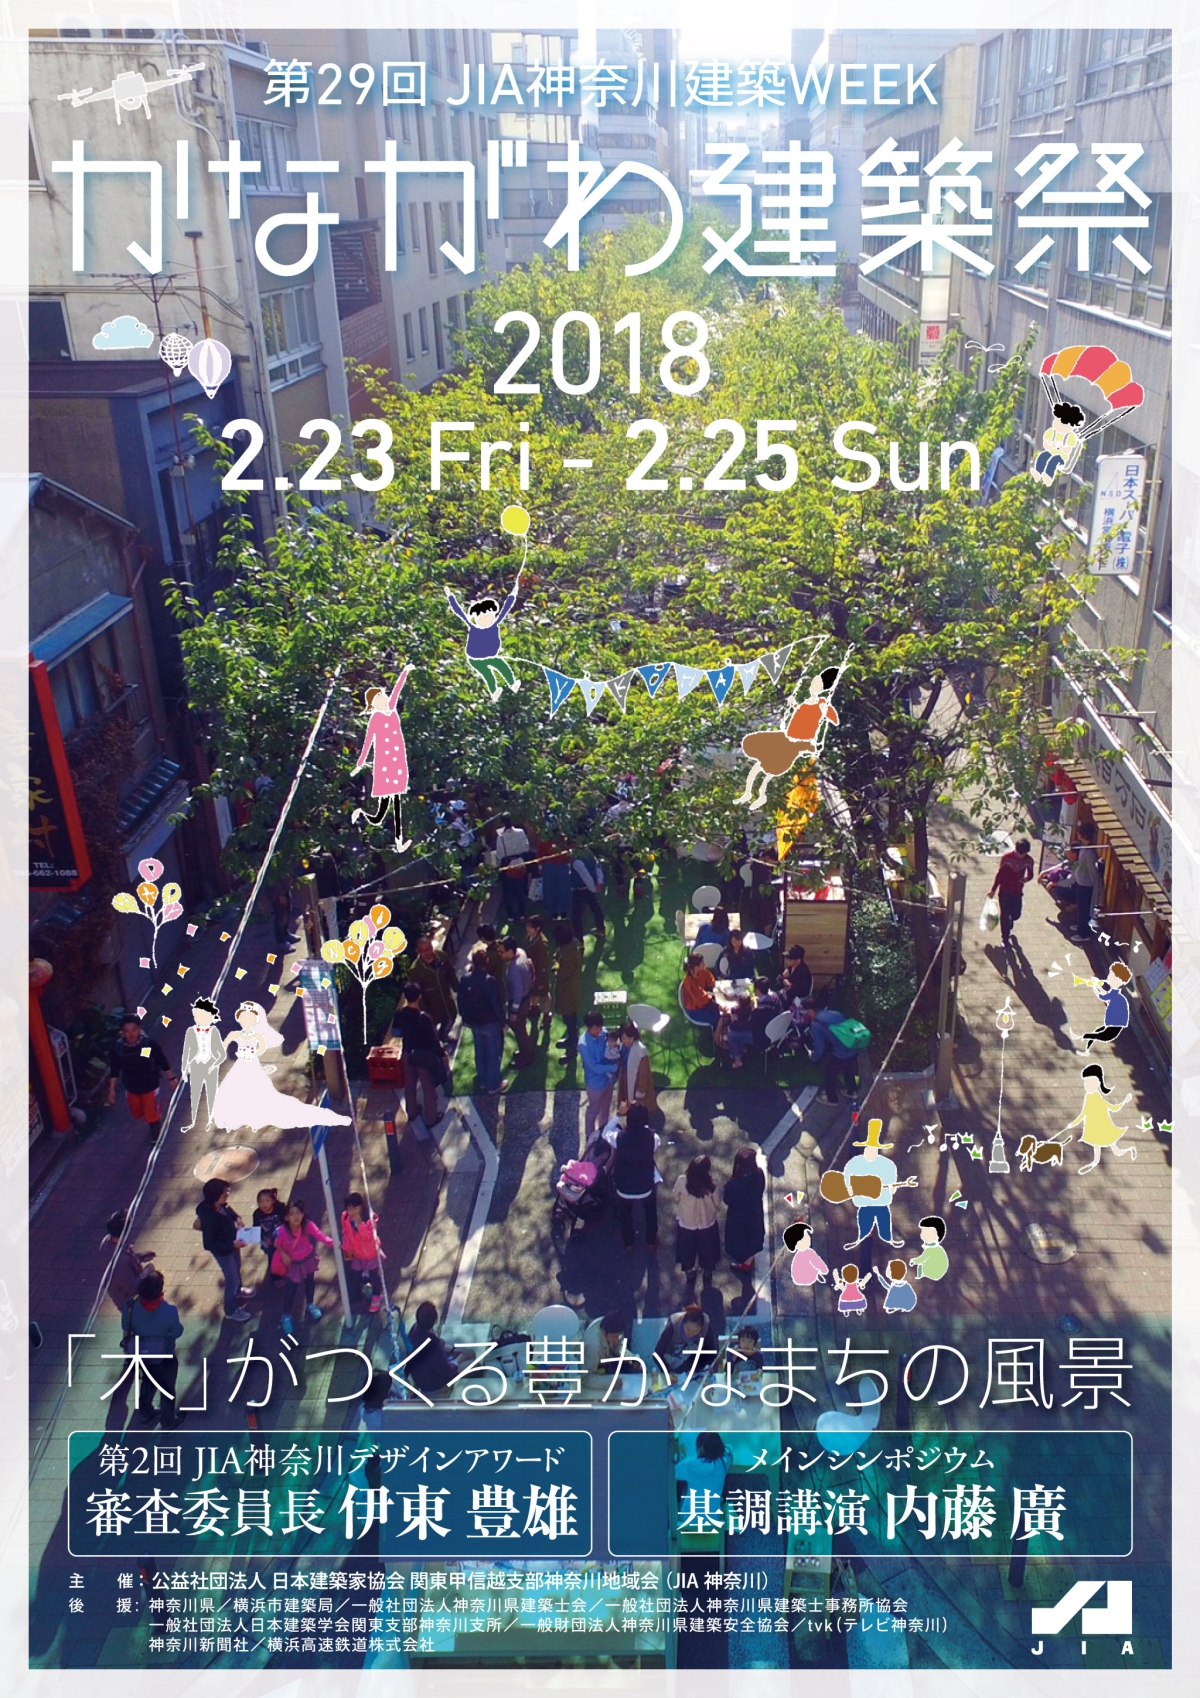 かながわ建築祭2018開催